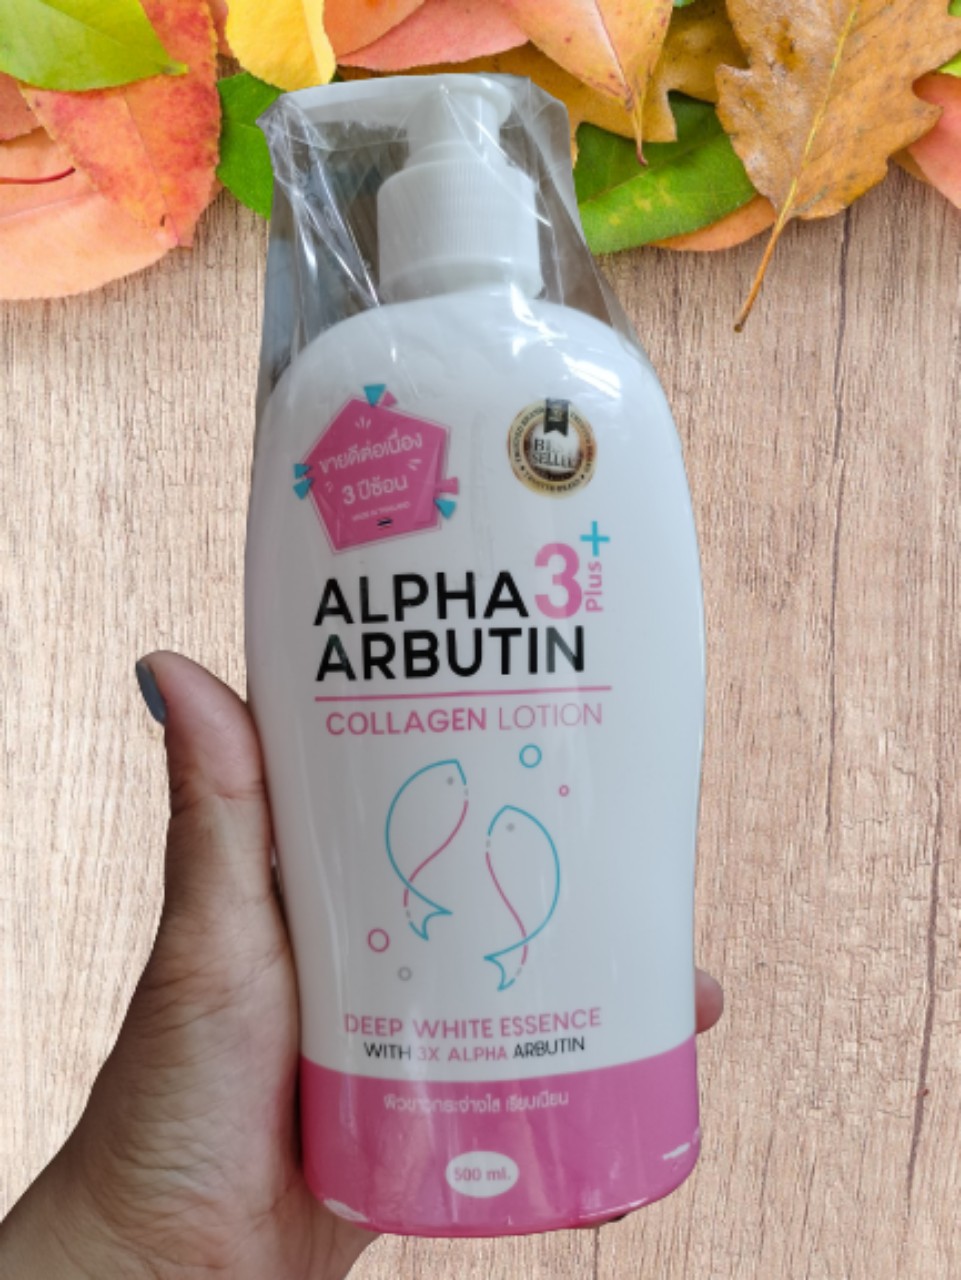 Lotion Sữa Dưỡng Trắng Da ALPHA ARBUTIN 3 Plus+ Collagen 500ml - Thái Lan